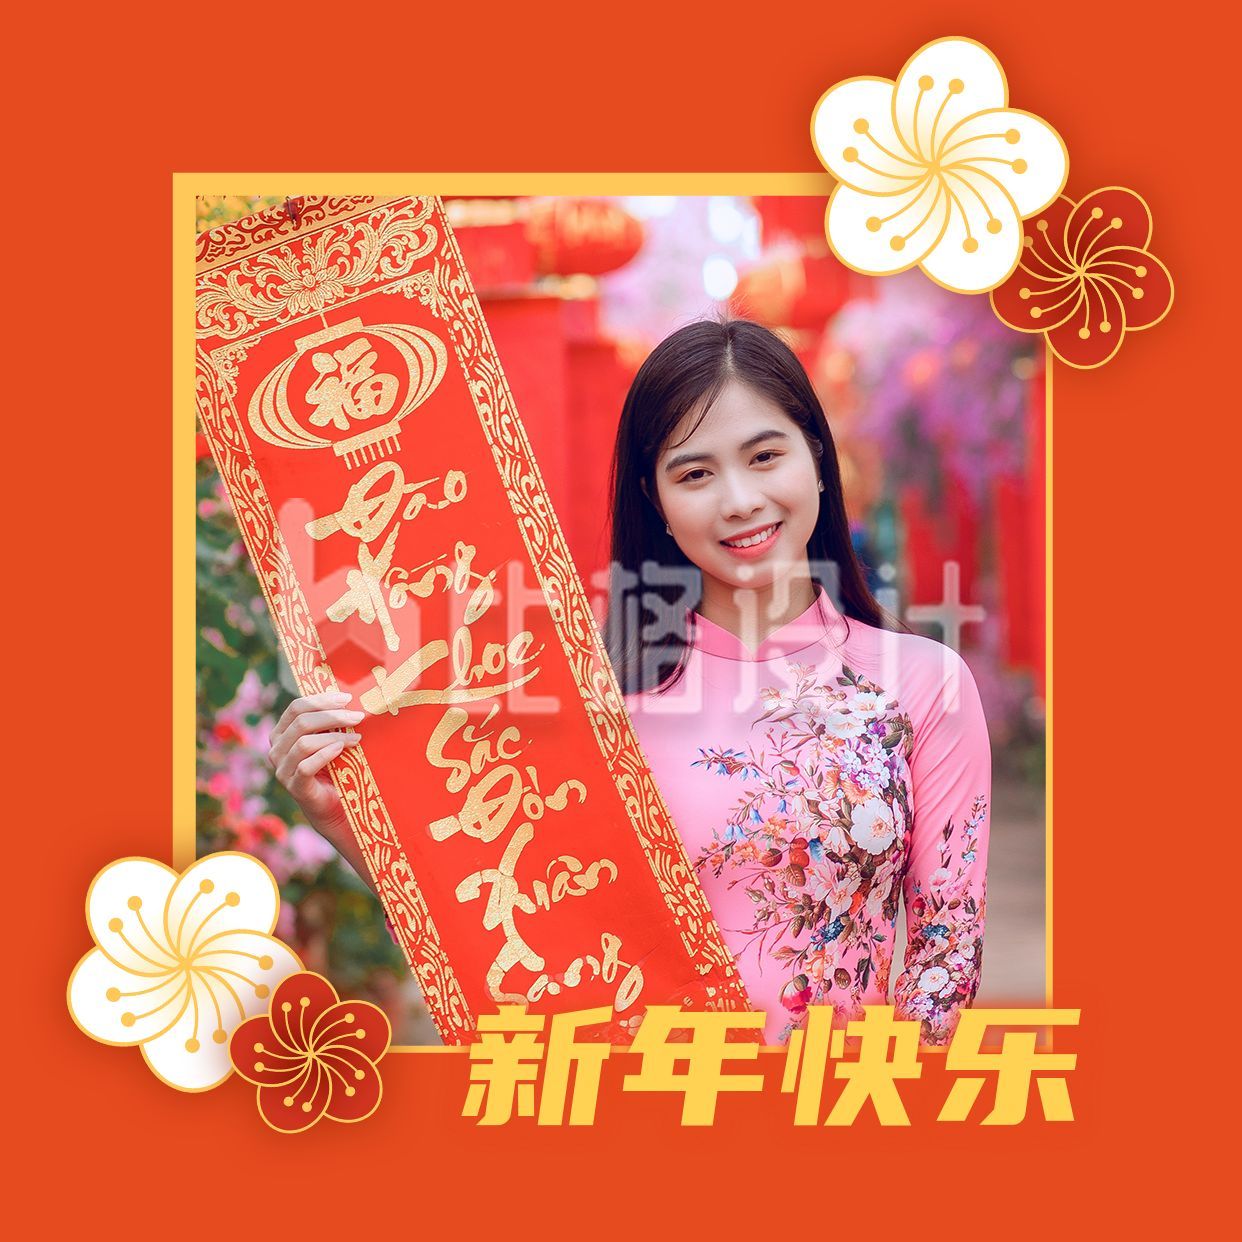 春节新年快乐拜年祝福橙红高端喜庆头像